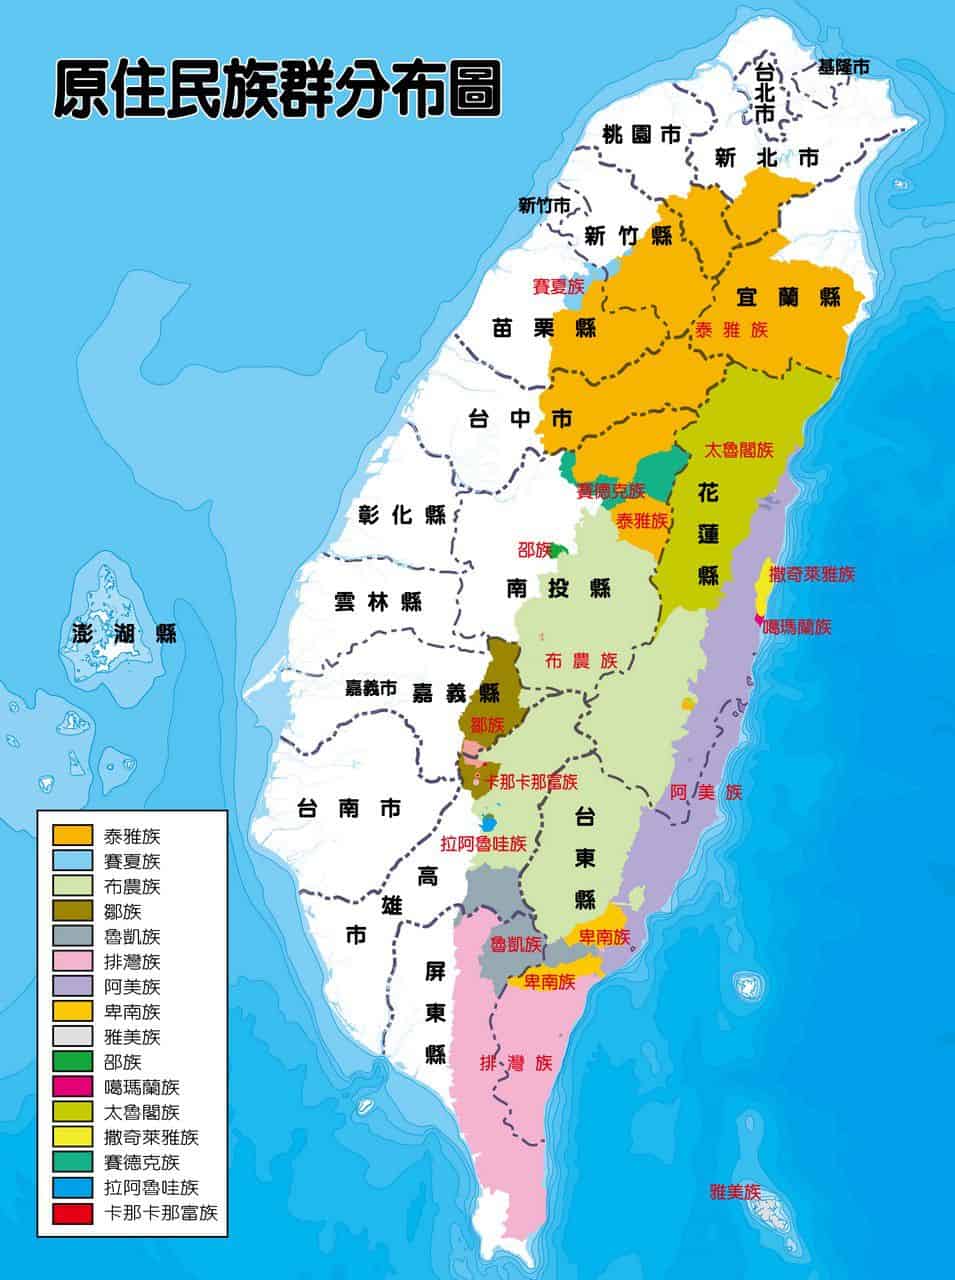 原住民分布圖 16族 - 台灣原住民族分布圖